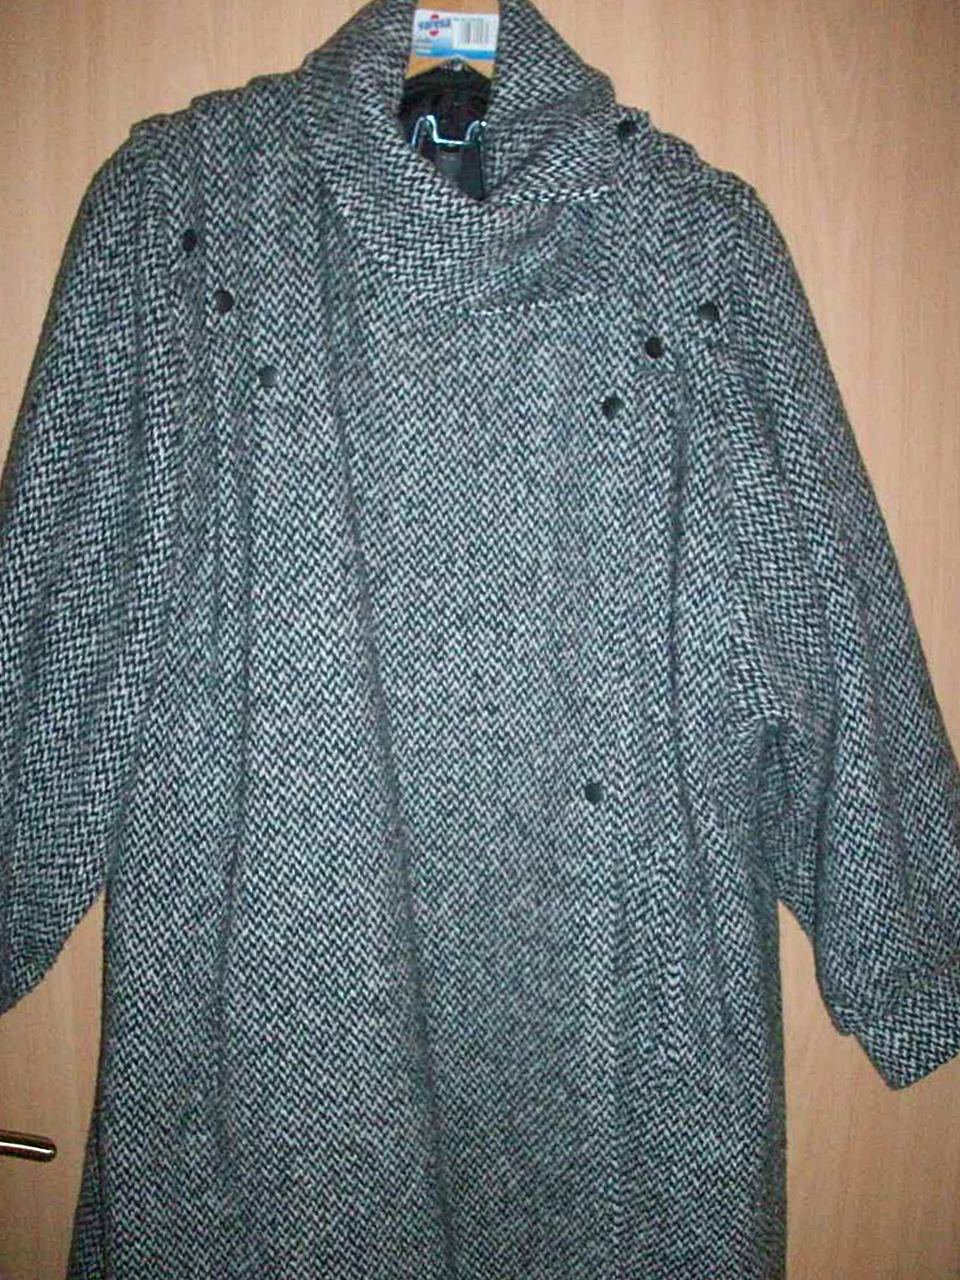 Wintermantel Damen Mantel Winter Wolle Wollmantel klassisch schwarz/weiß Gr 36